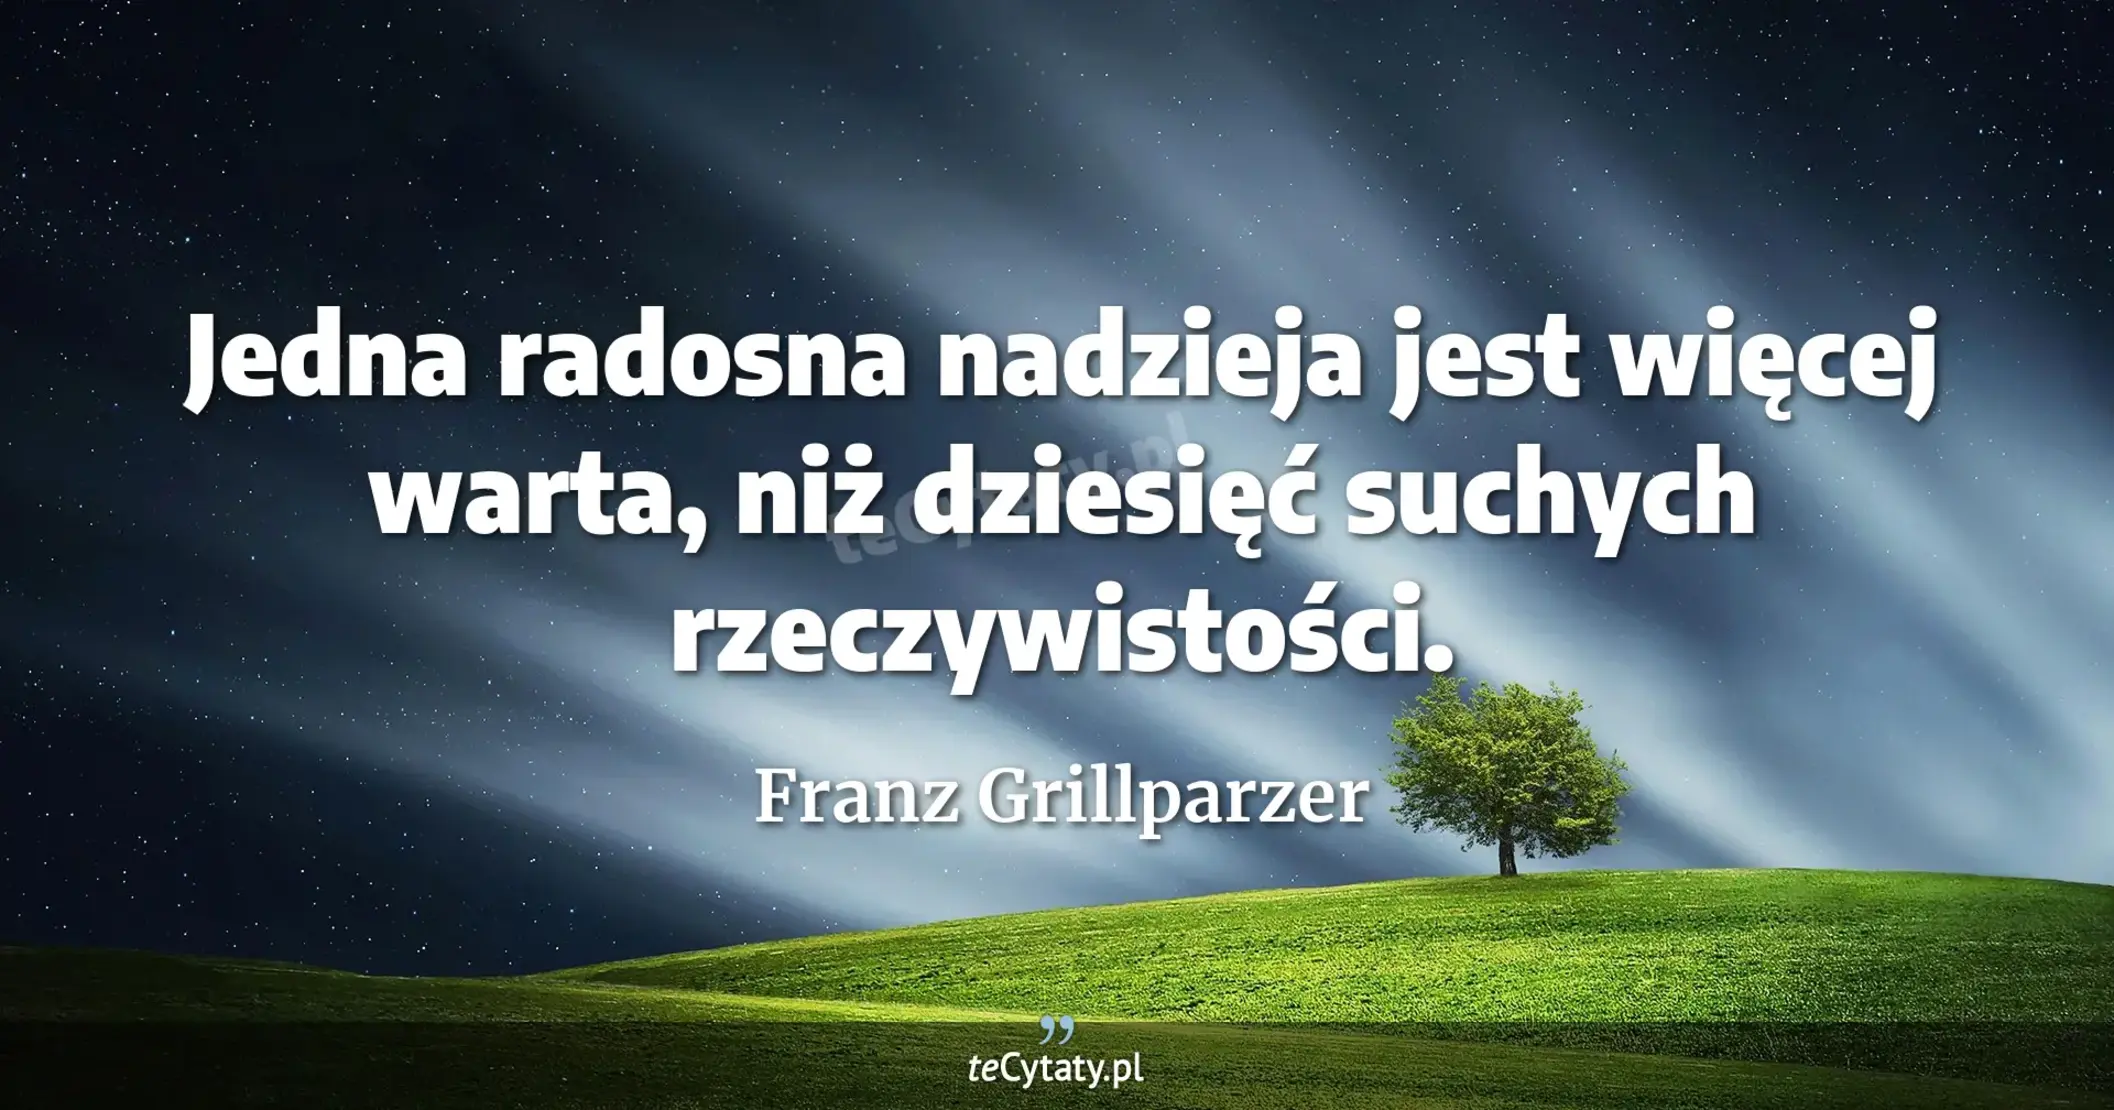 Jedna radosna nadzieja jest więcej warta, niż dziesięć suchych rzeczywistości. - Franz Grillparzer